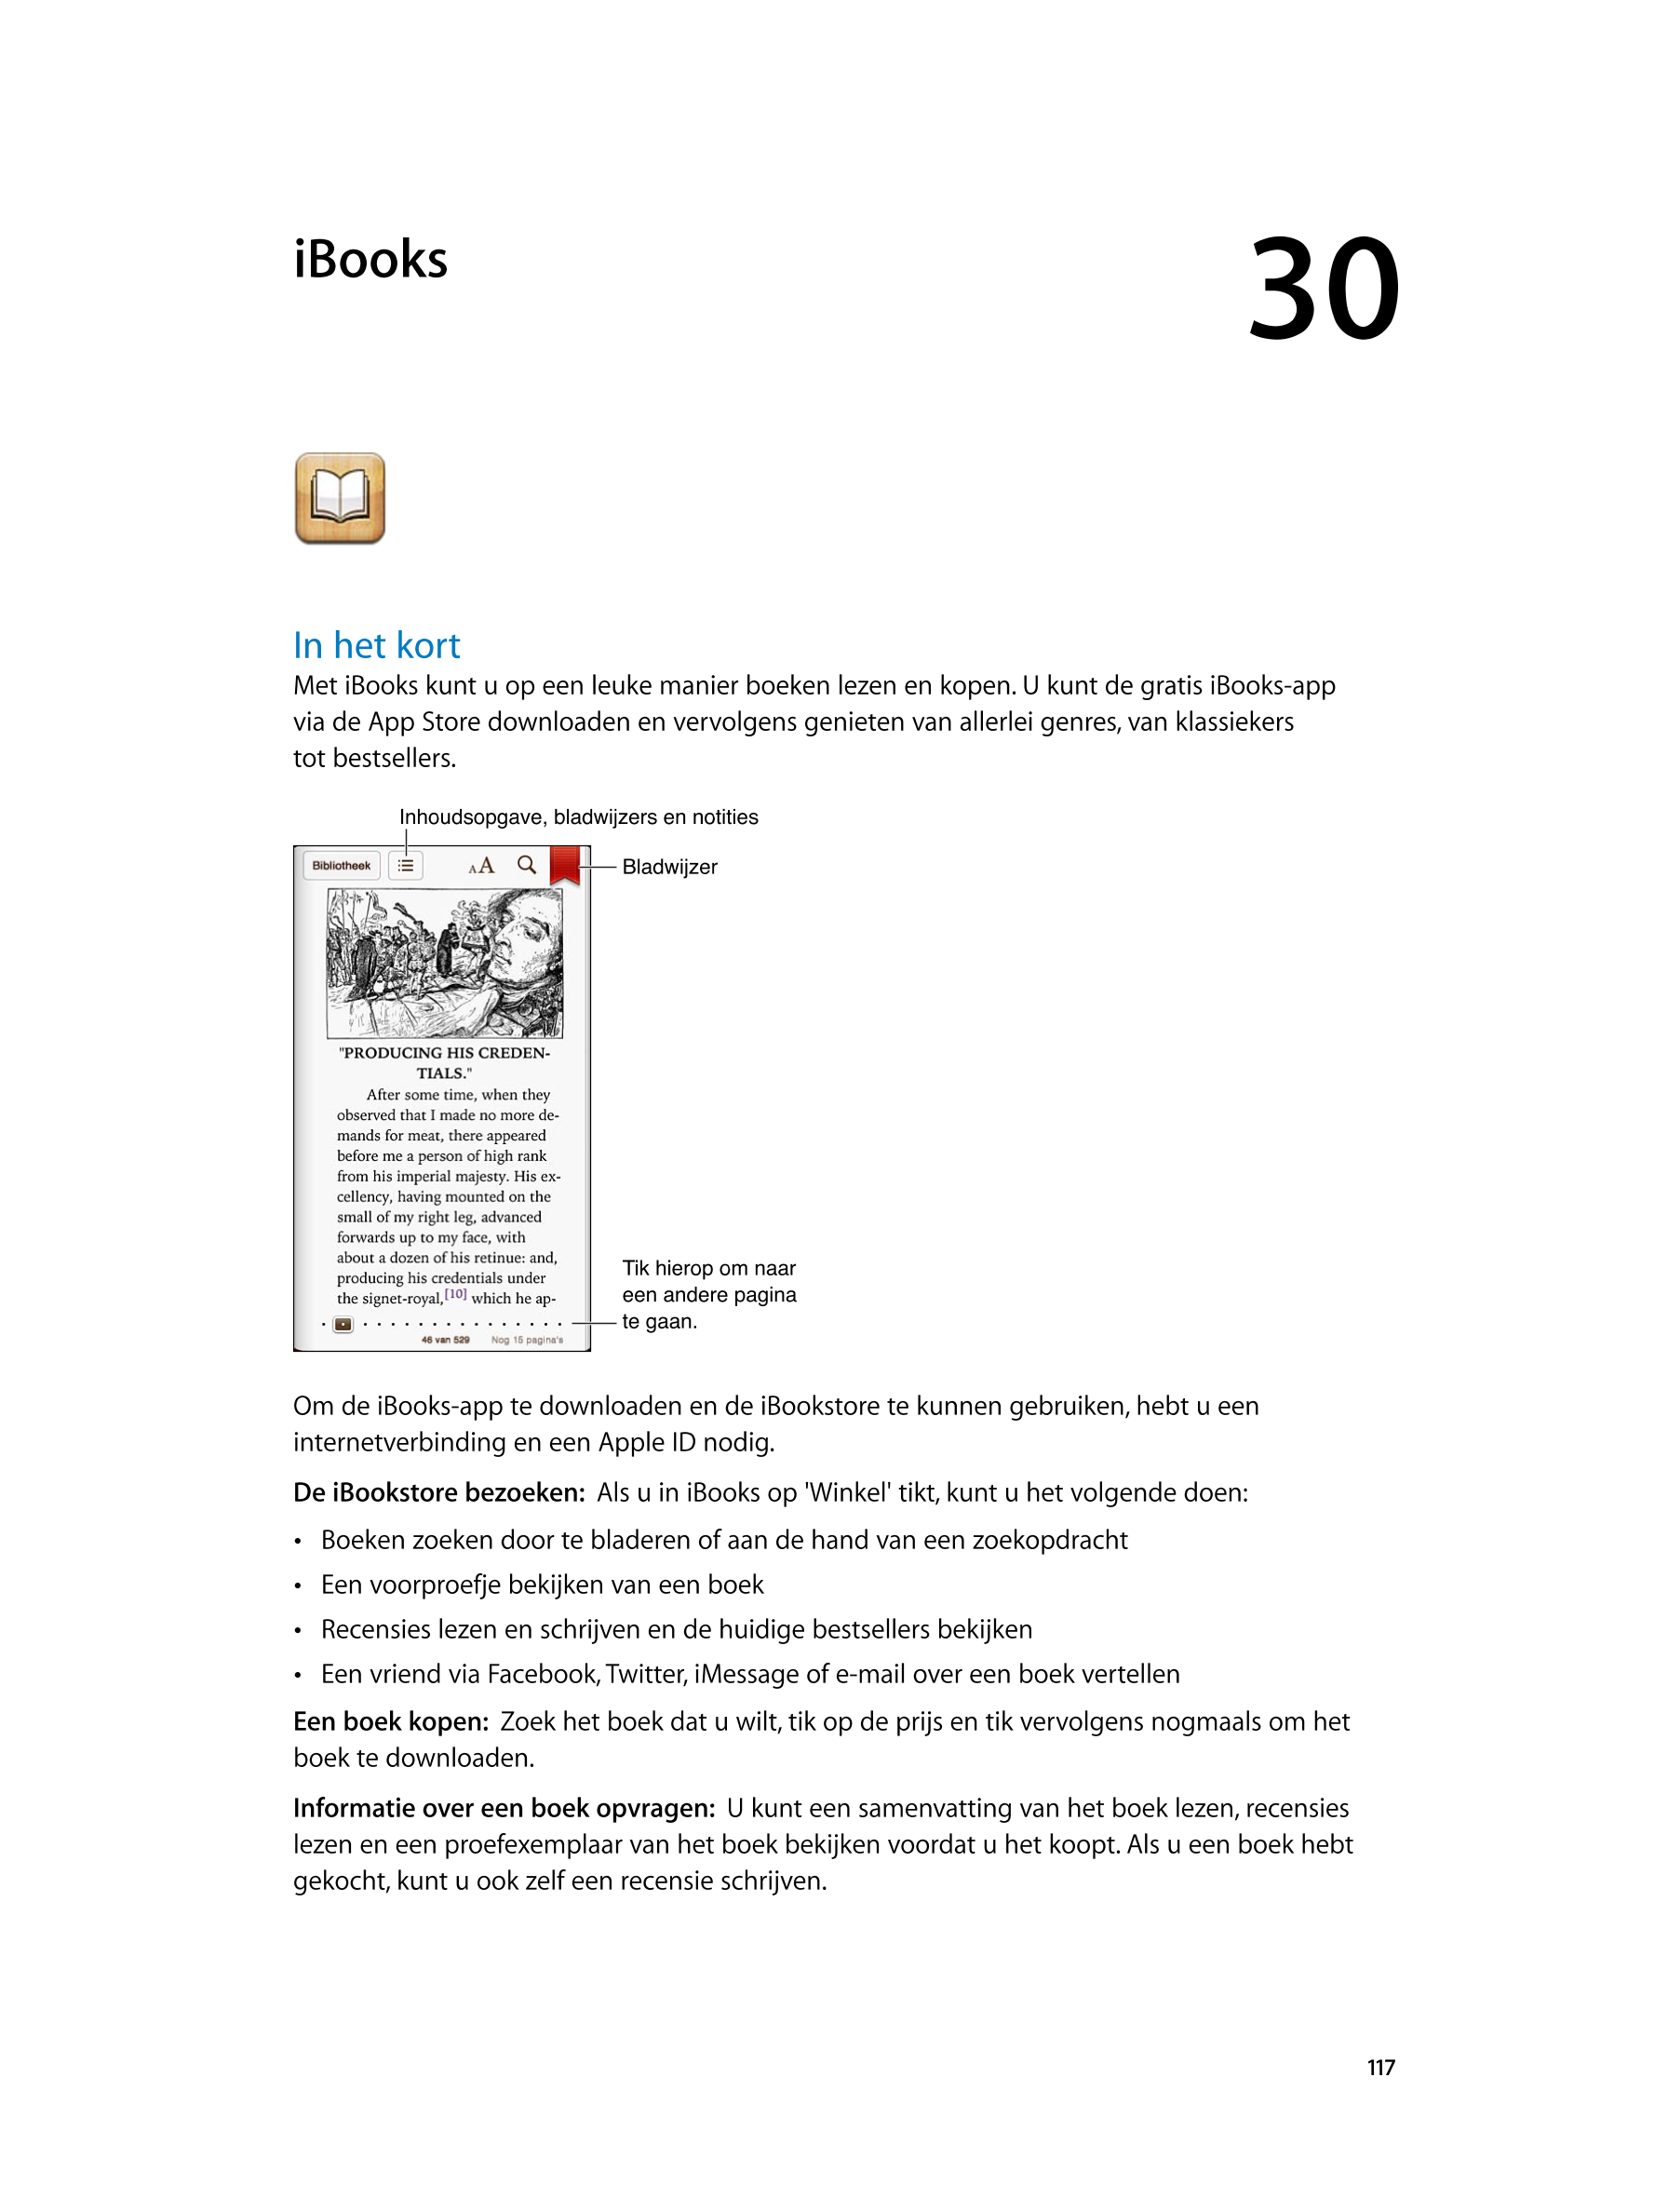   iBooks 30
In het kort
Met iBooks kunt u op een leuke manier boeken lezen en kopen. U kunt de gratis iBooks-app 
via de App Sto